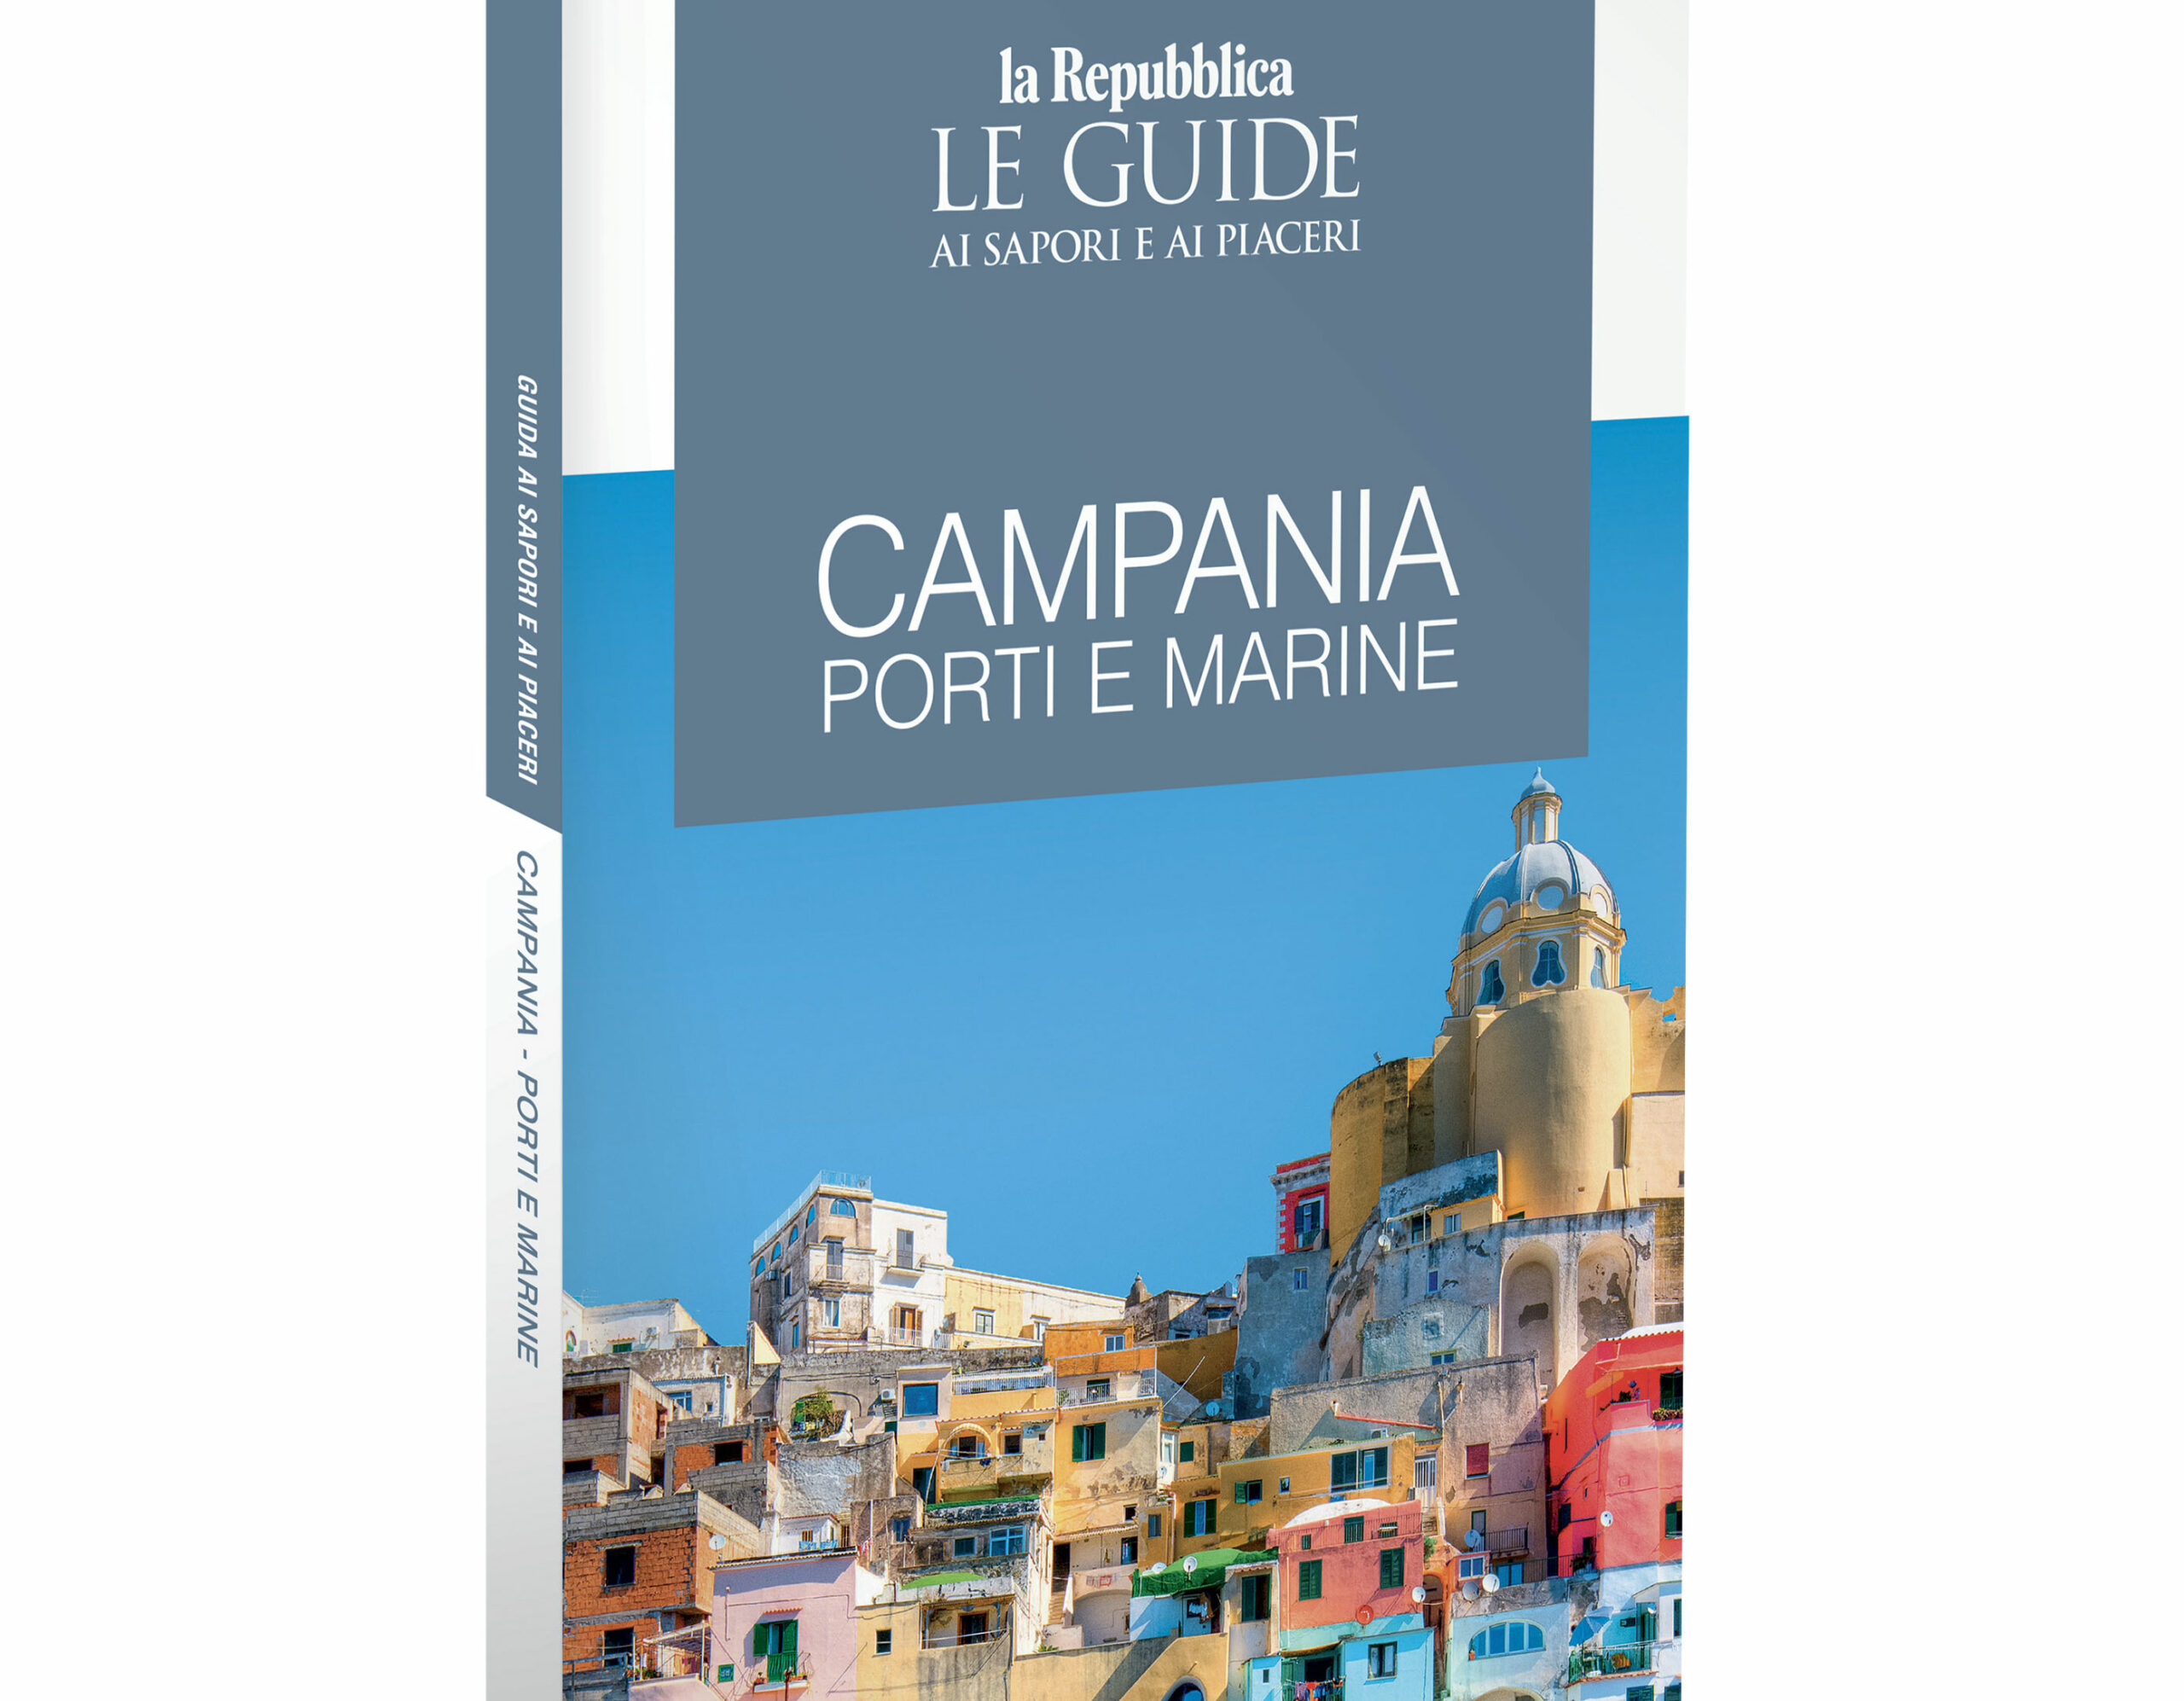 “Campania – Porti e marine”, la Guida di Repubblica  per vivere il mare e la costa